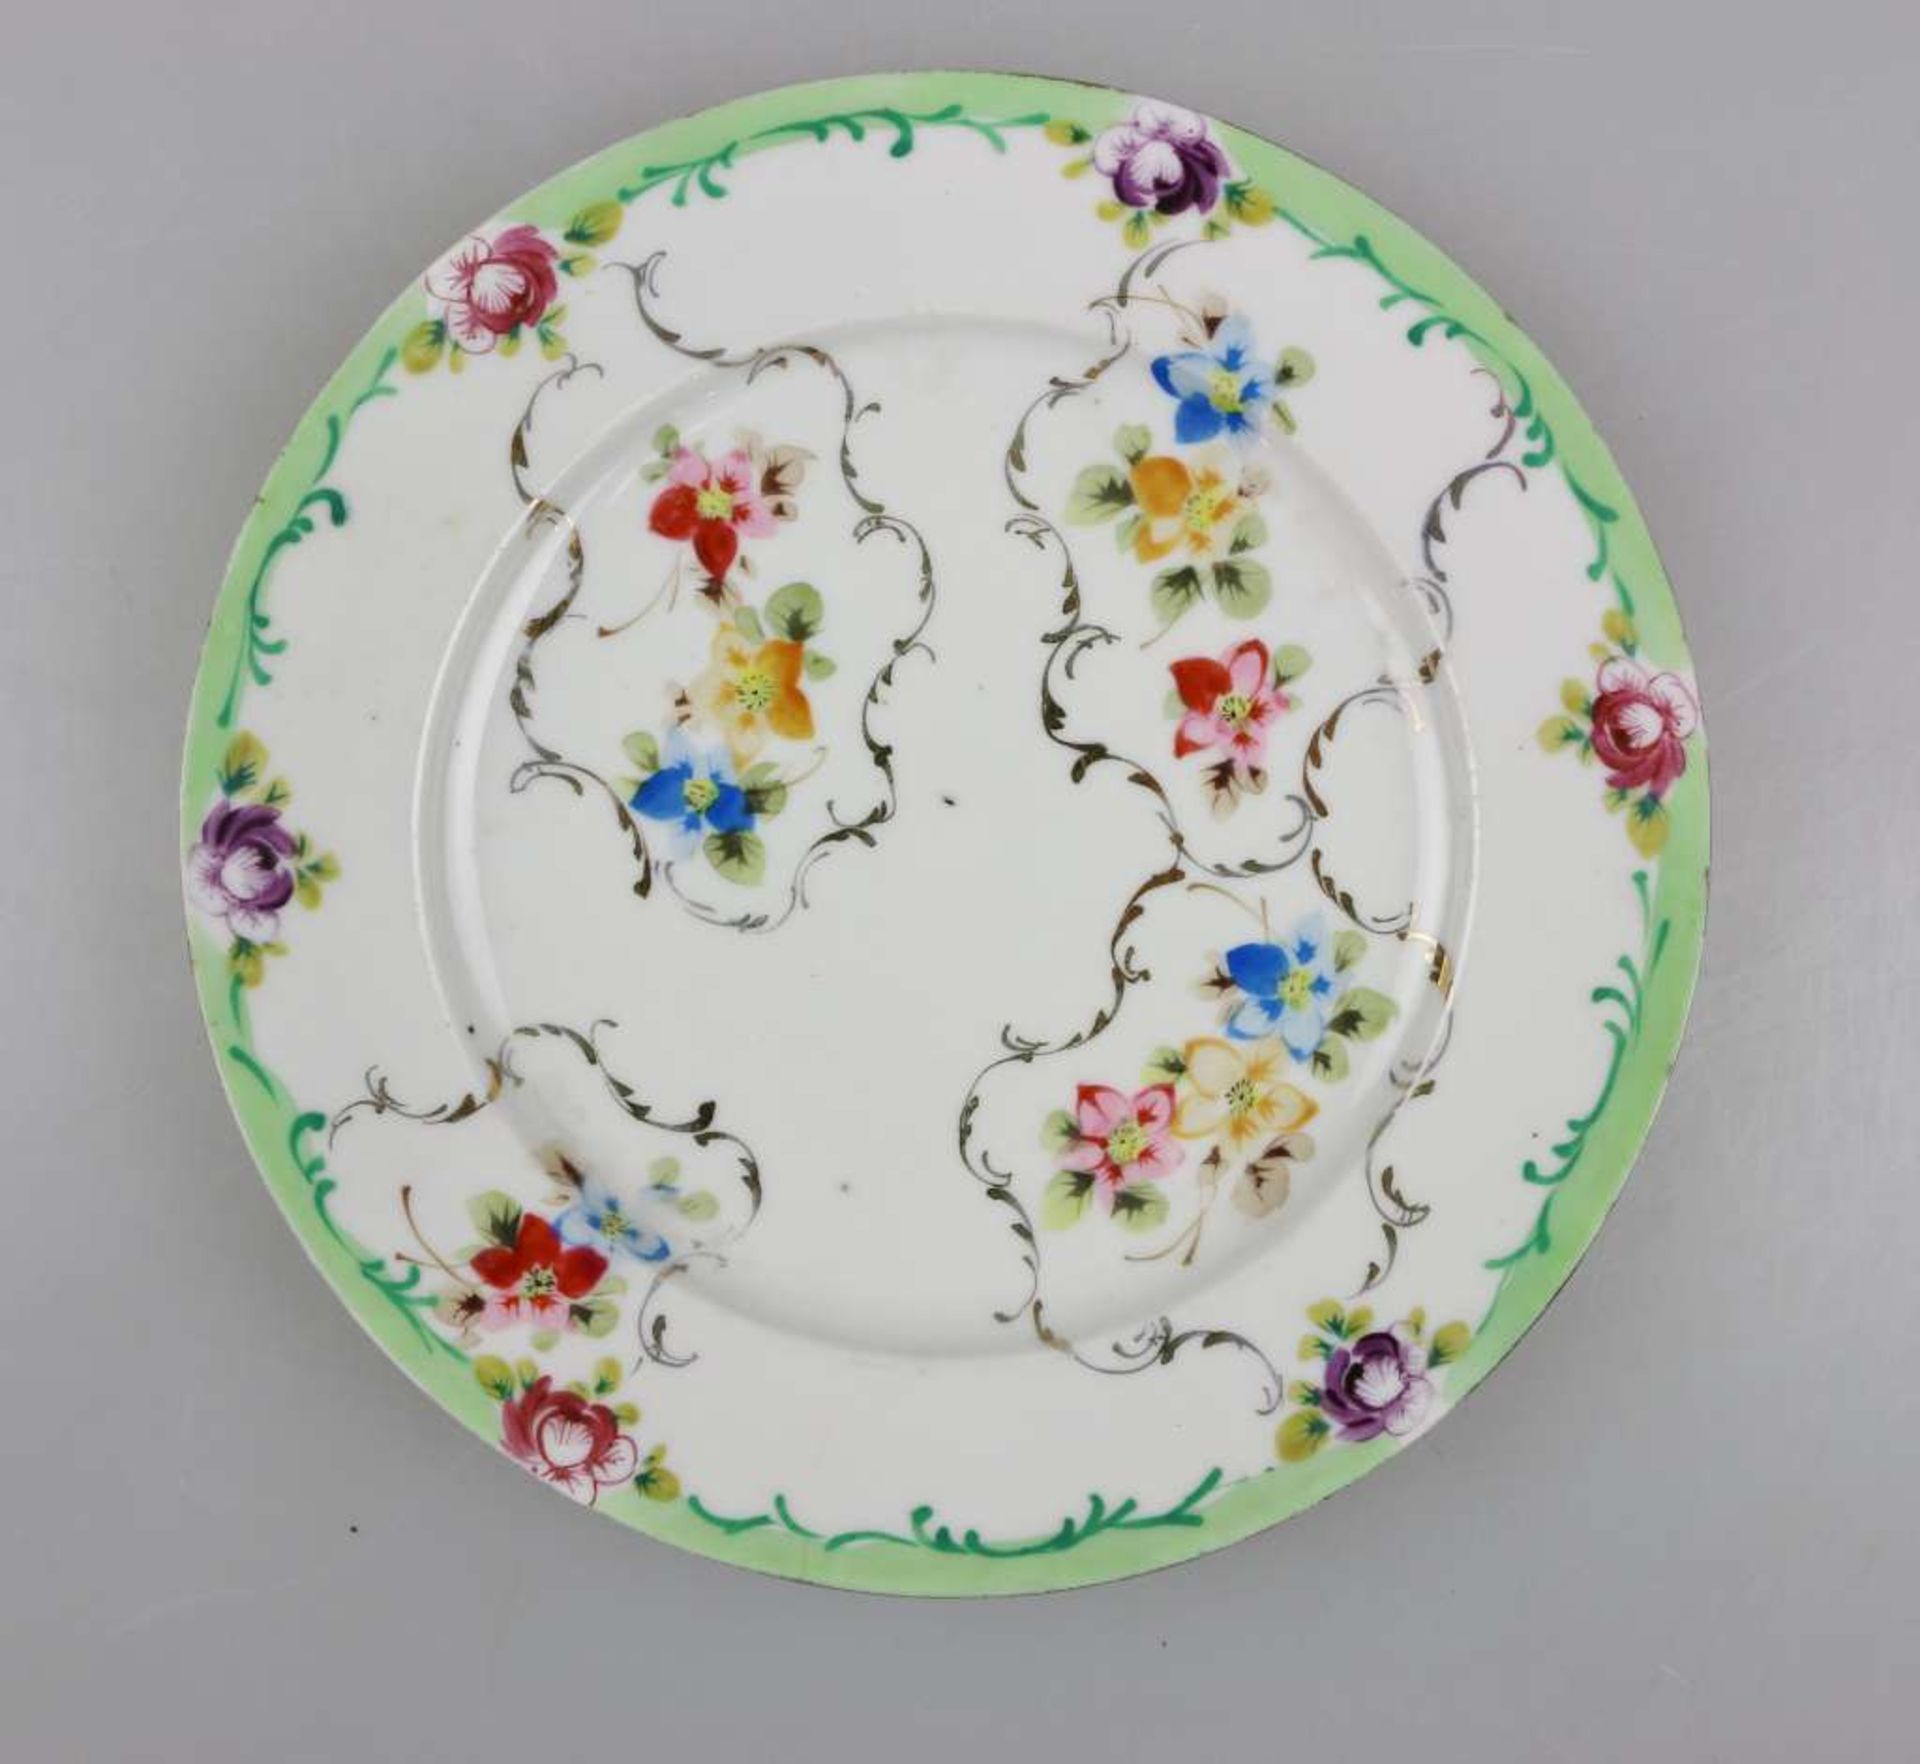 Acht Teller, Frankreich, wohl Limoges, spätbiedermeierlich, mit floralem Dekor, polychrom gefasst - Bild 2 aus 6